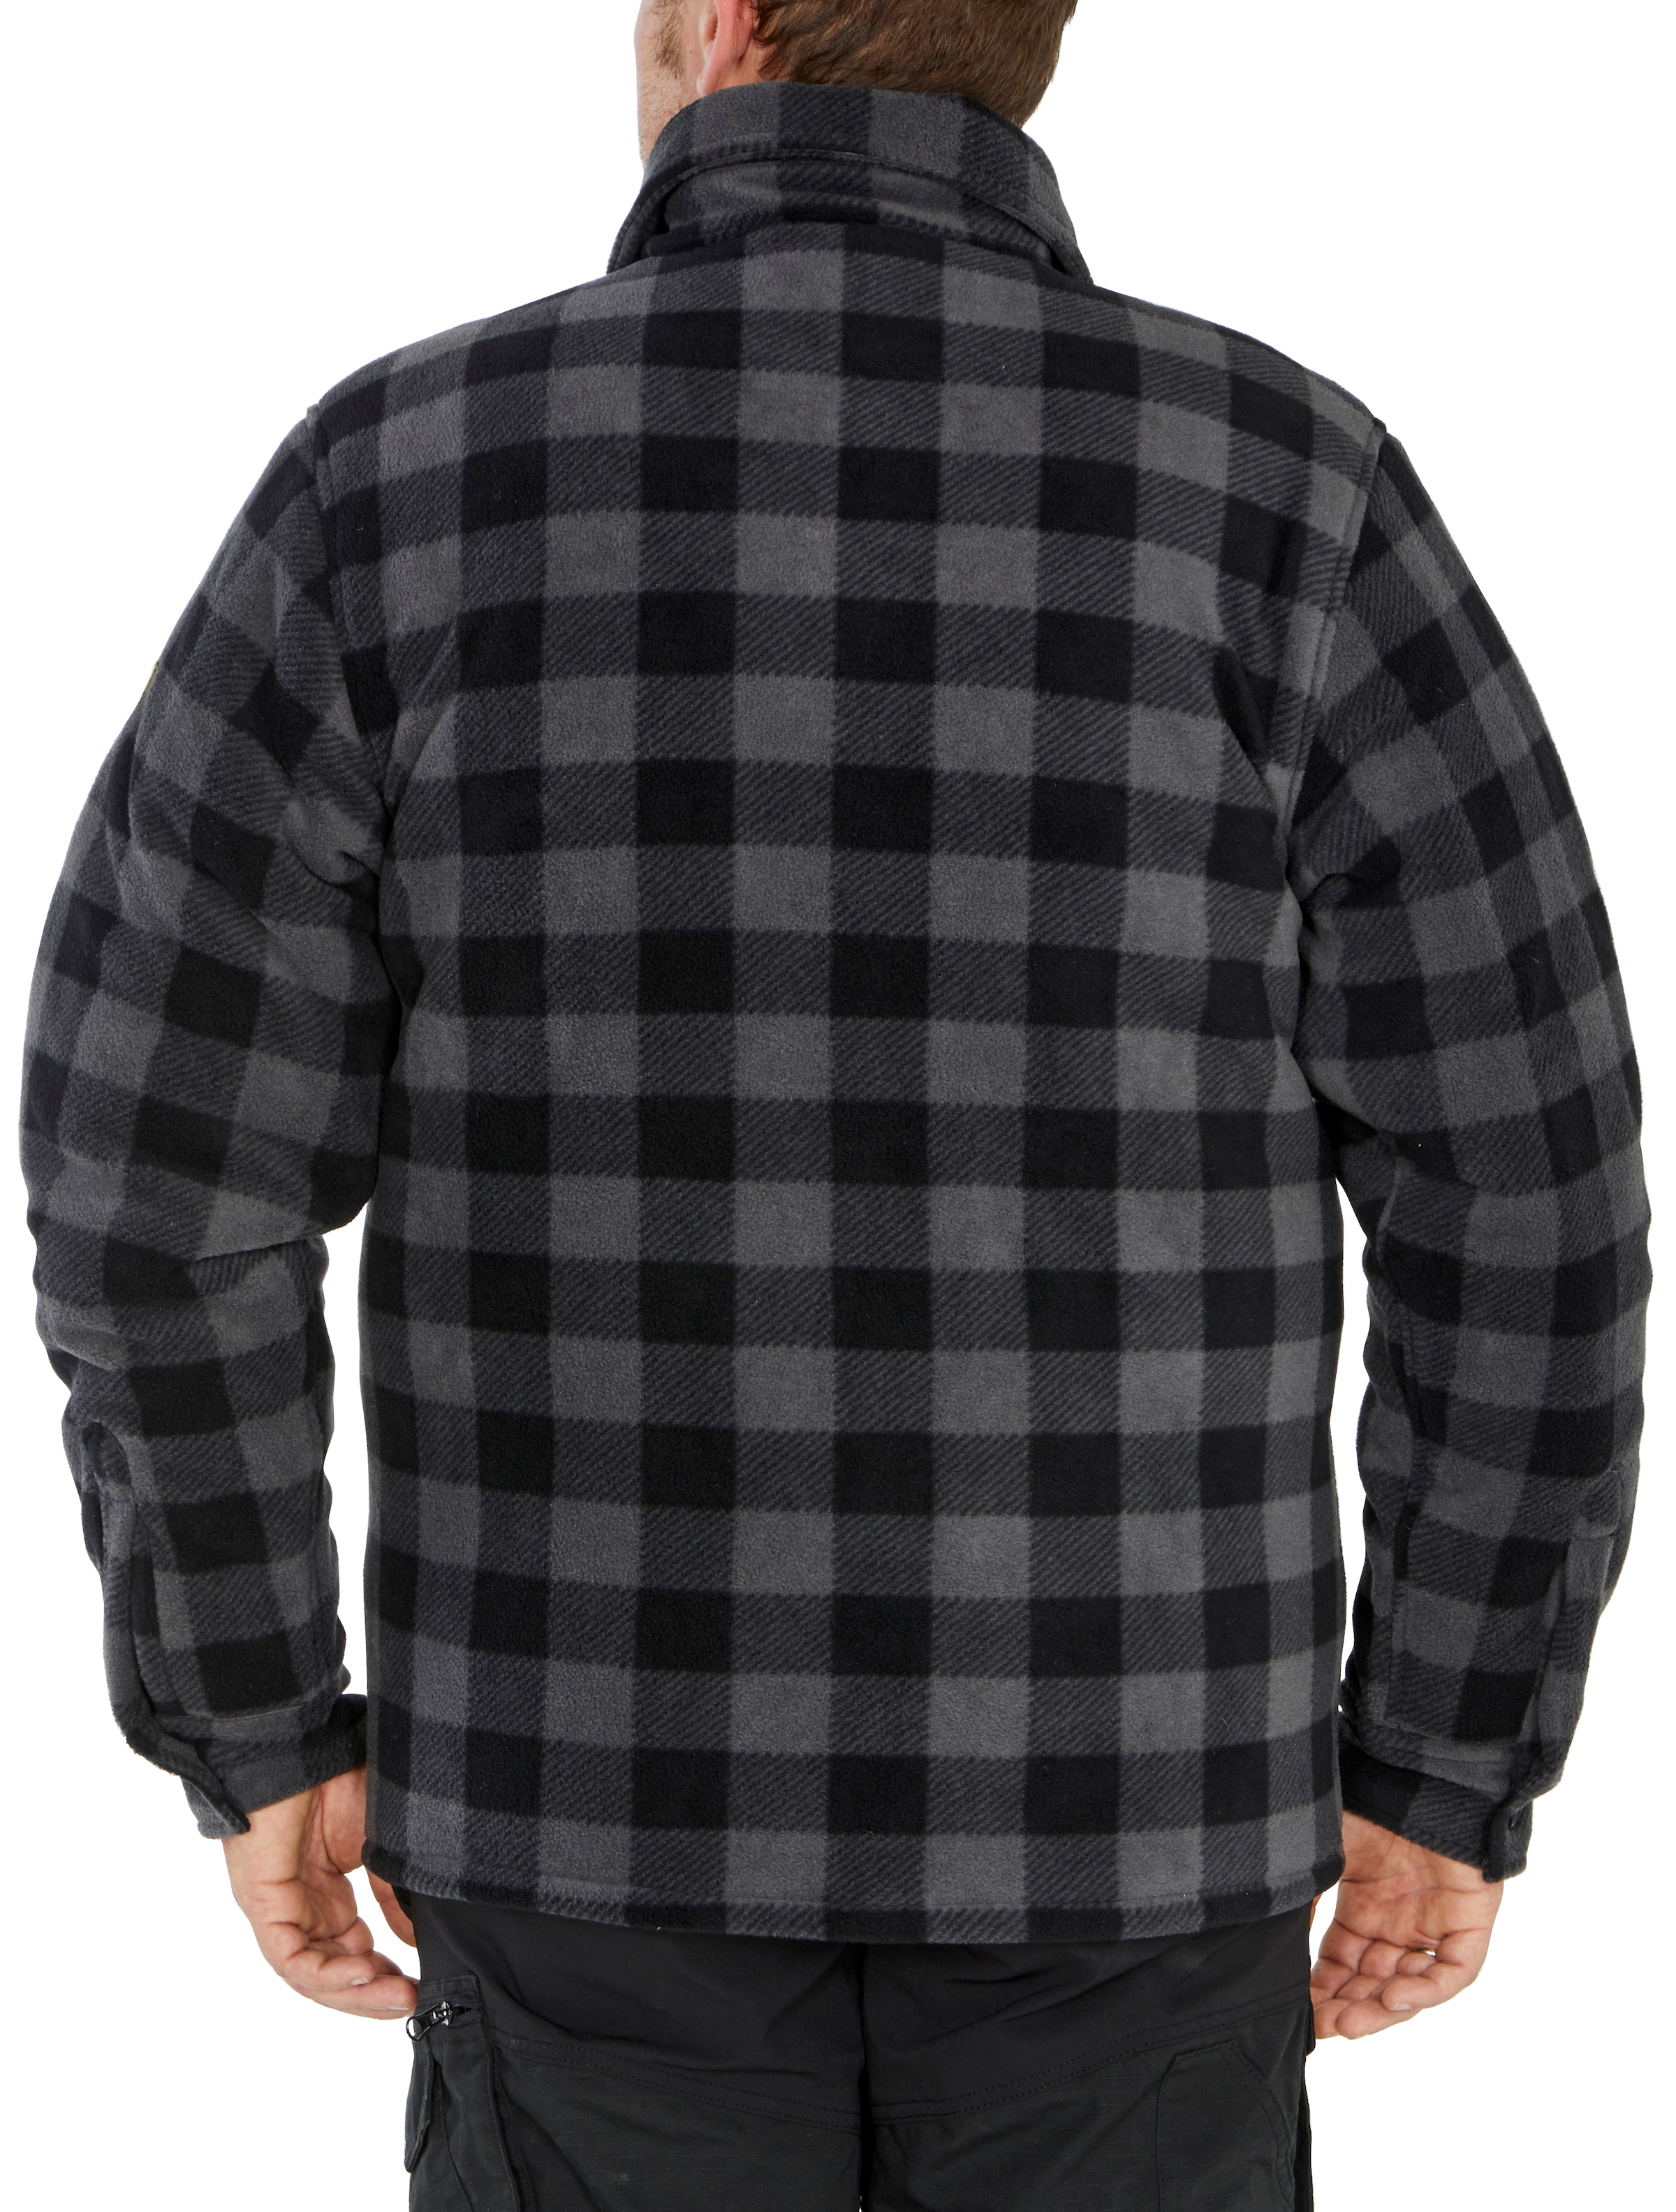 Northern Country Flanellhemd, (als gefüttert, mit Taschen, mit zu offen verlängertem warm | Flanellstoff tragen), zugeknöpft Hemd oder Rücken, OTTO Jacke 5